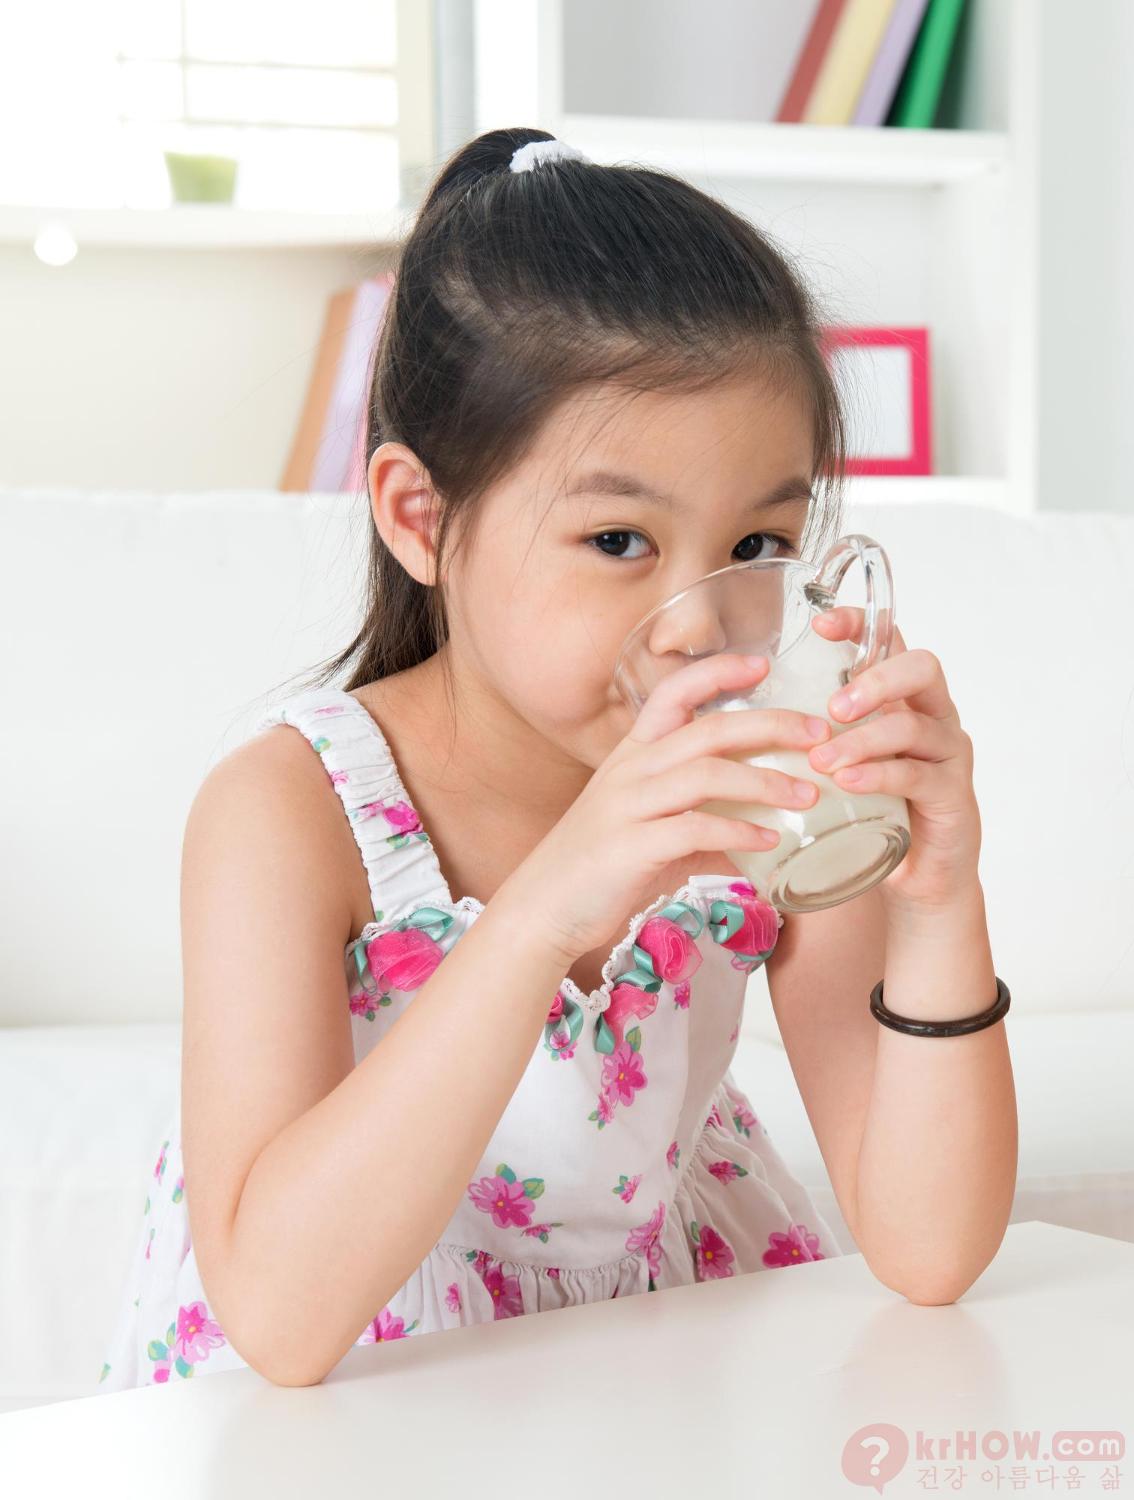 적절한 수분 섭취: 아이가 충분한 수분을 섭취하도록 하여 목을 촉촉하게 유지합니다.